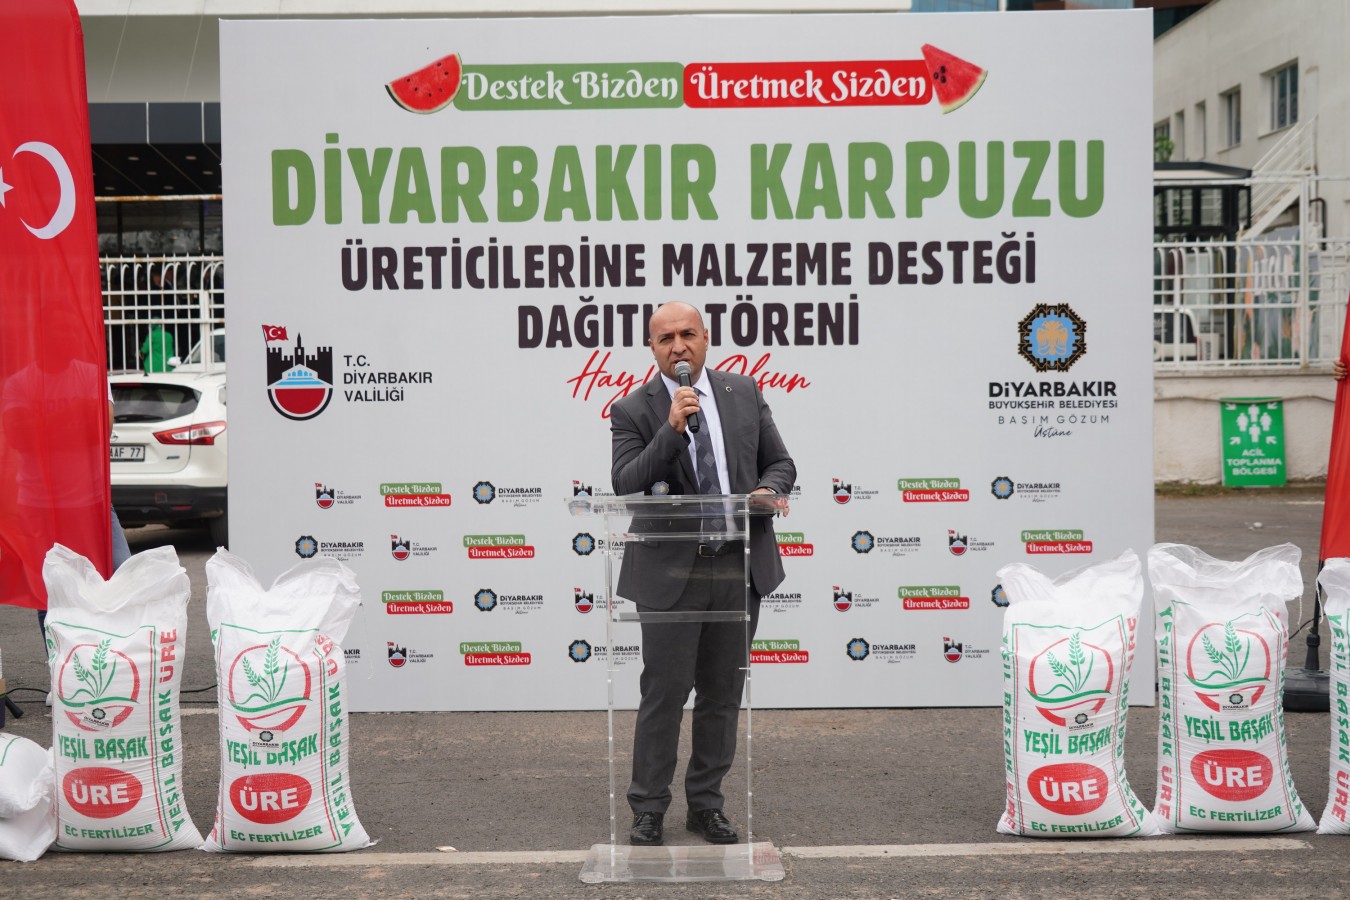 Diyarbakır karpuzunun özgünlüğünün korunması için desteğe devam